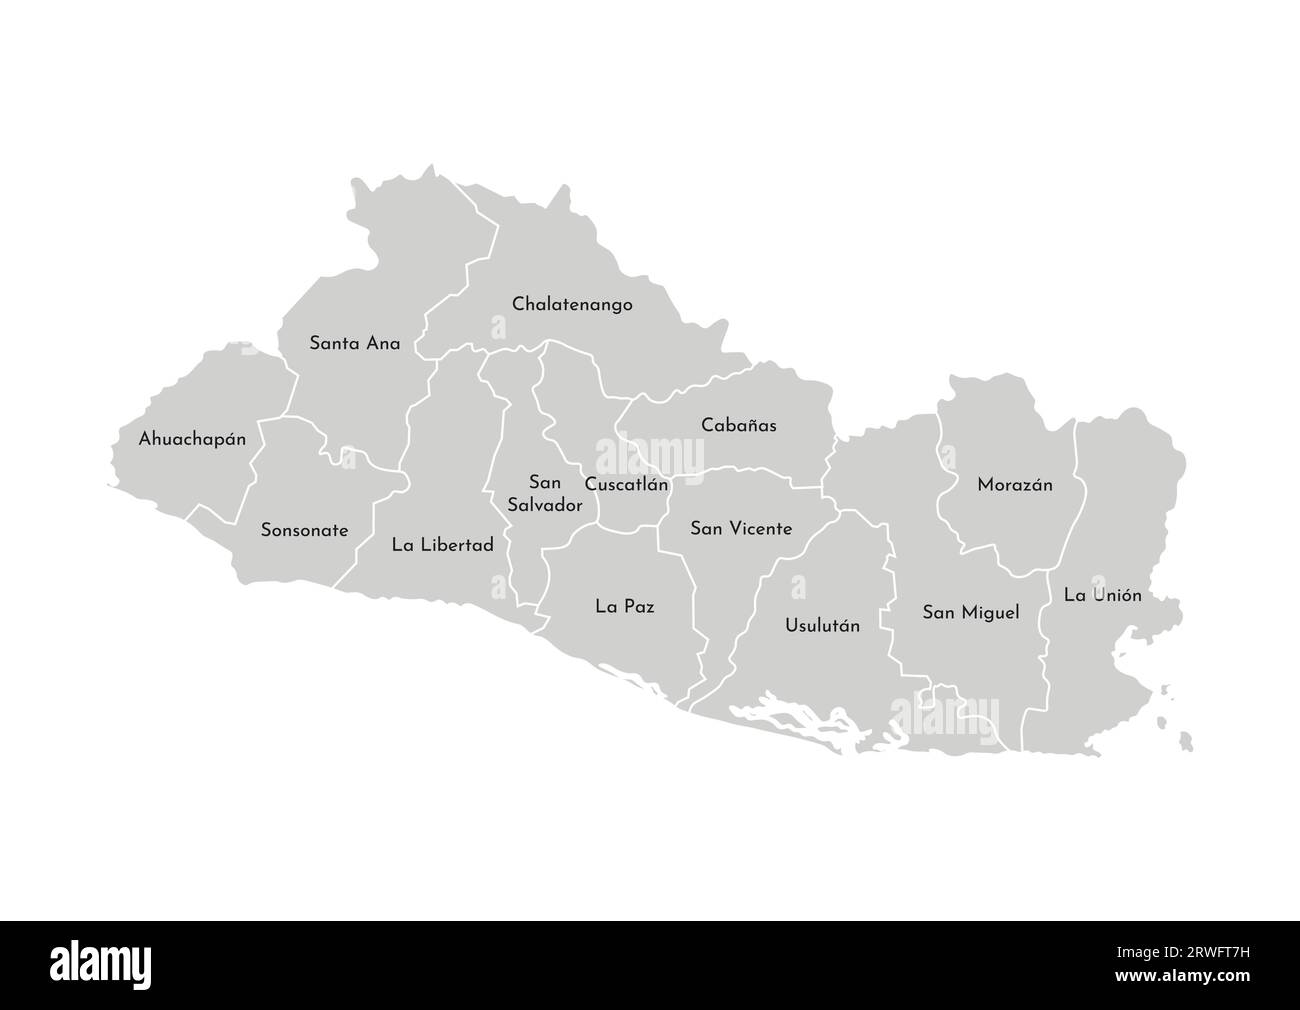 Illustrazione vettoriale isolata della mappa amministrativa semplificata di El Salvador. Confini e nomi dei dipartimenti (regioni). Silhouette grigie. Bianco Illustrazione Vettoriale